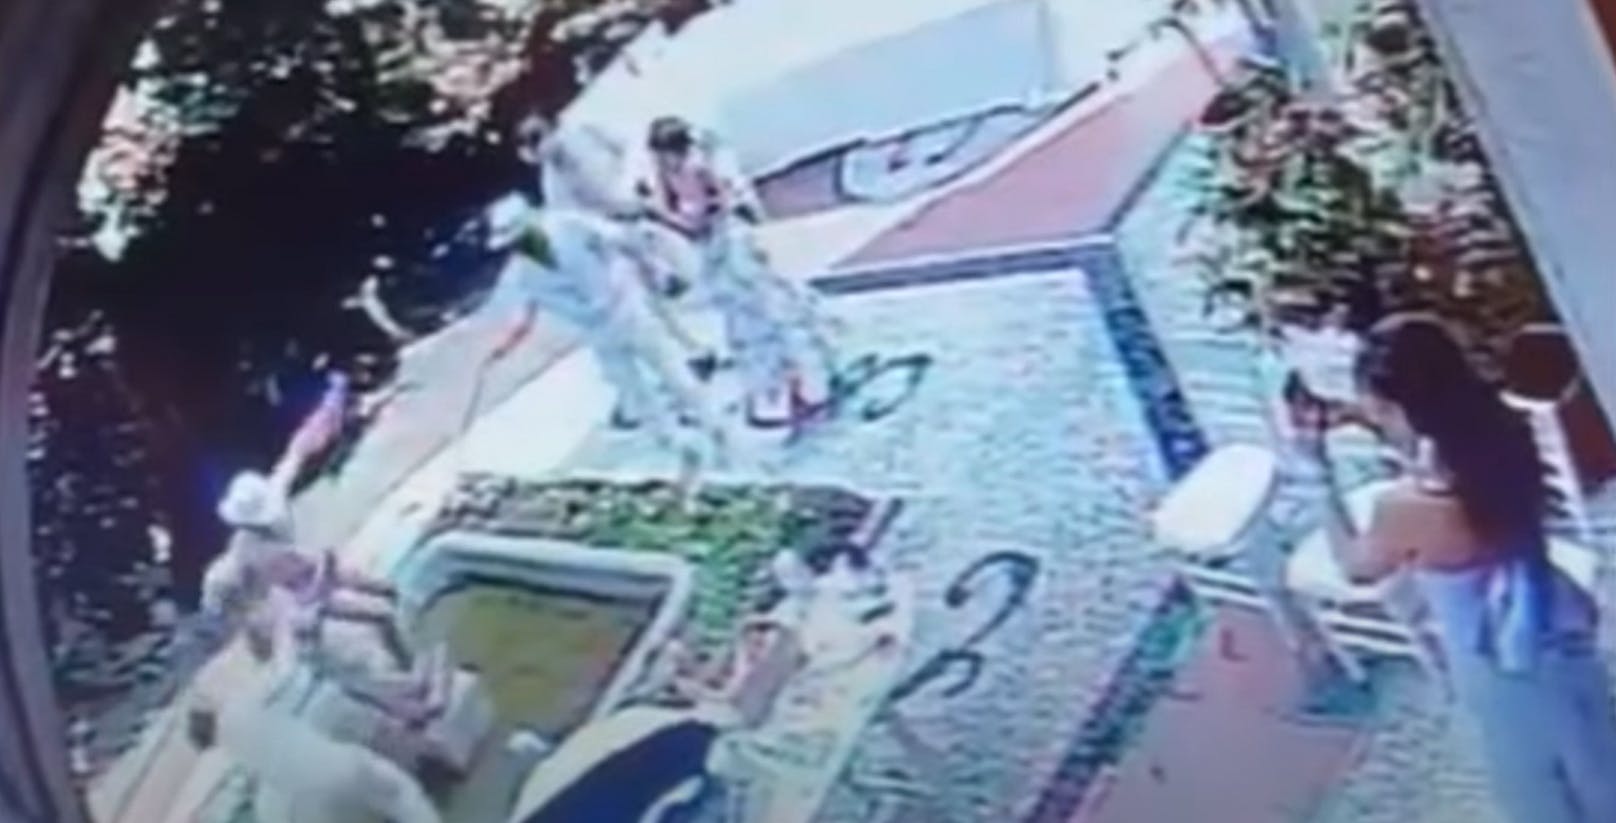 Aufnahmen der Videoüberwachungsanlage der Villa zeigen, wie sich der Influencer von vier Freunden mit Smartphones filmen lässt, während er die Statue einer weiblichen Figur umarmt.